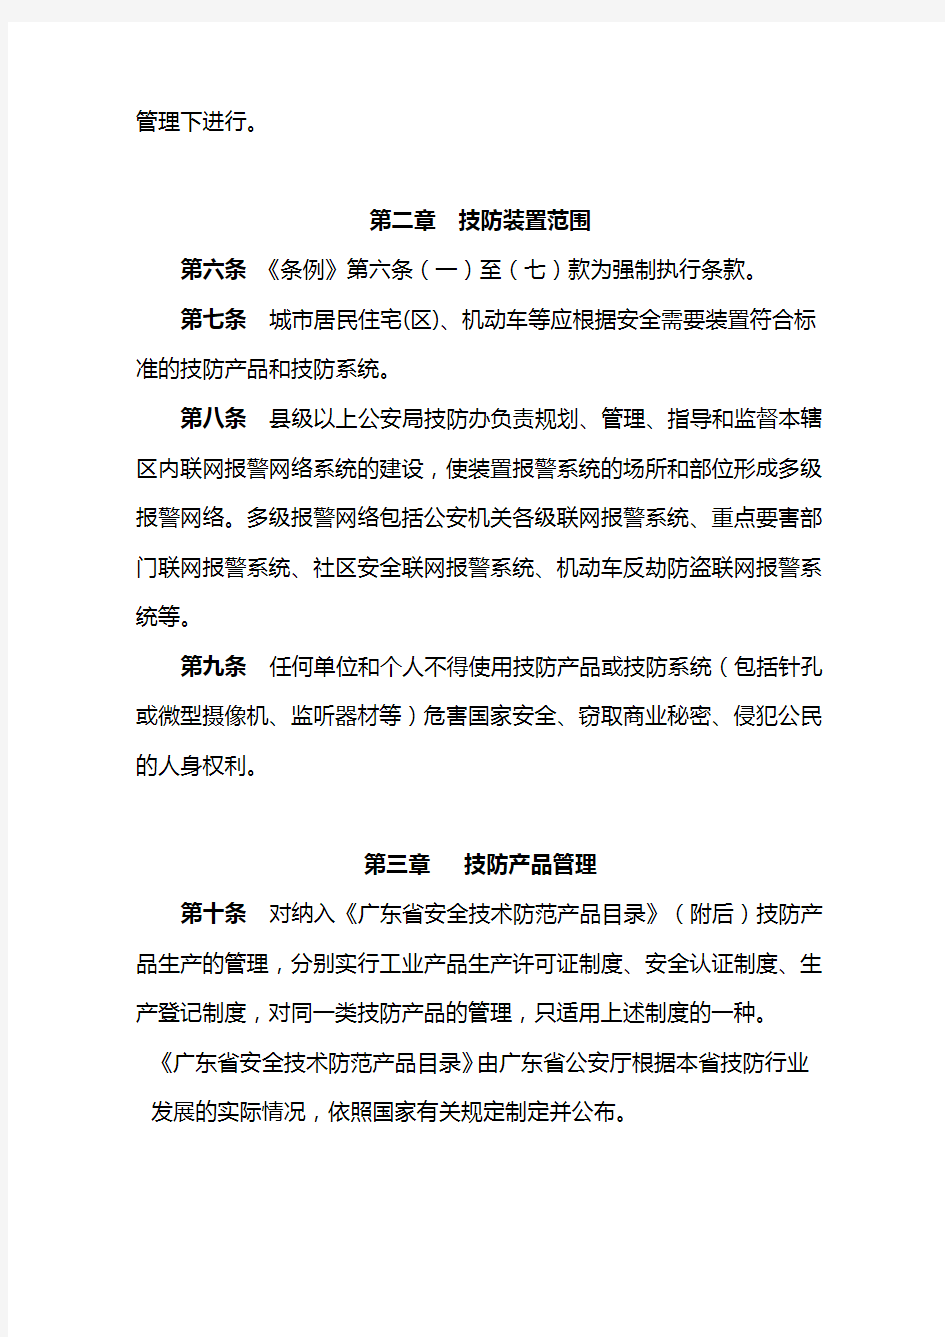 广东省安全技术防范管理条例实施办法